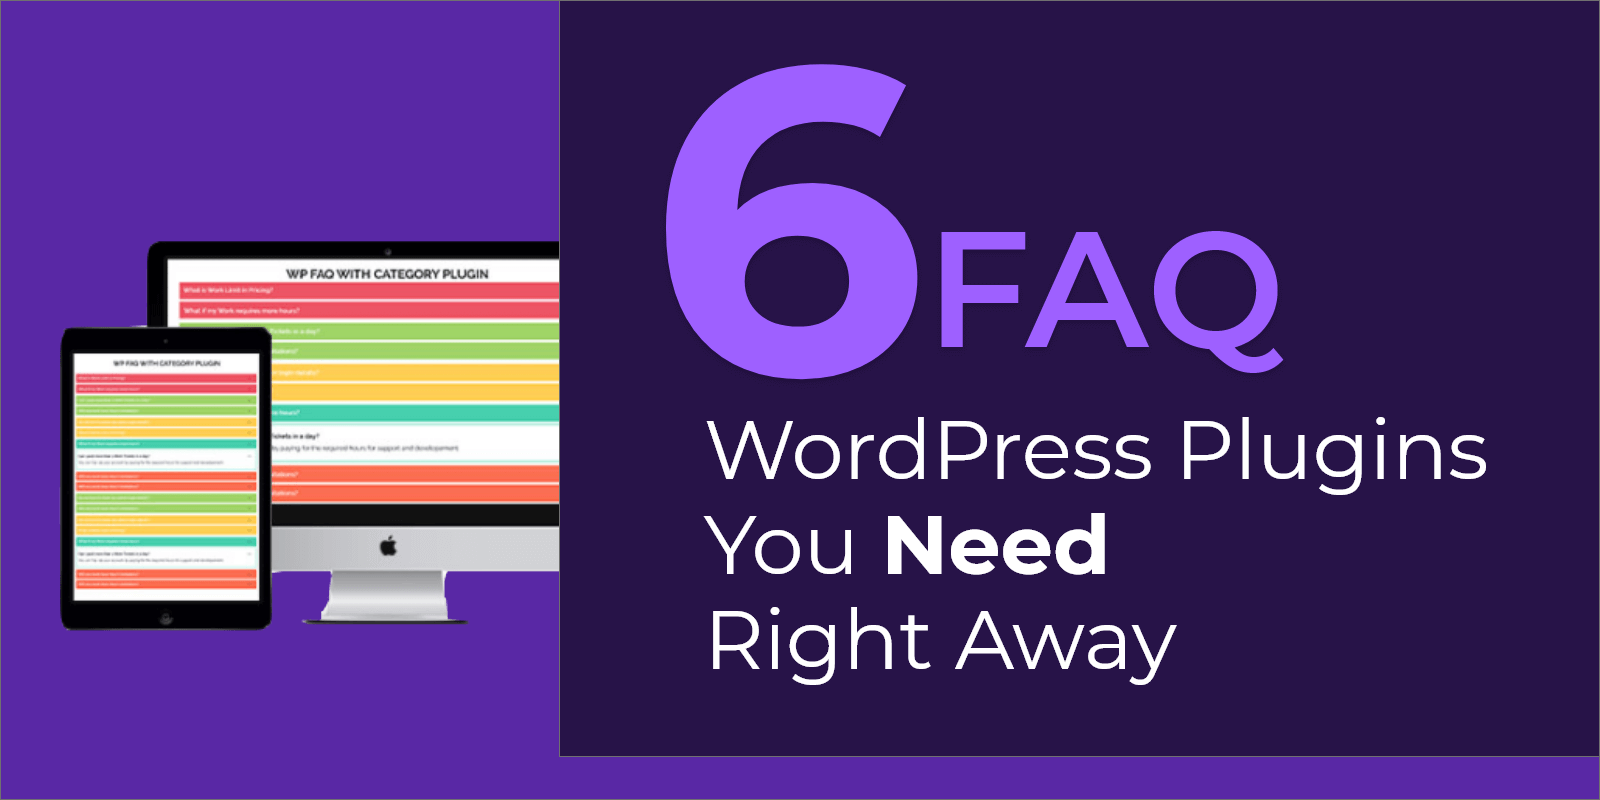 6 FAQ WordPress Plugins You Need Right Away